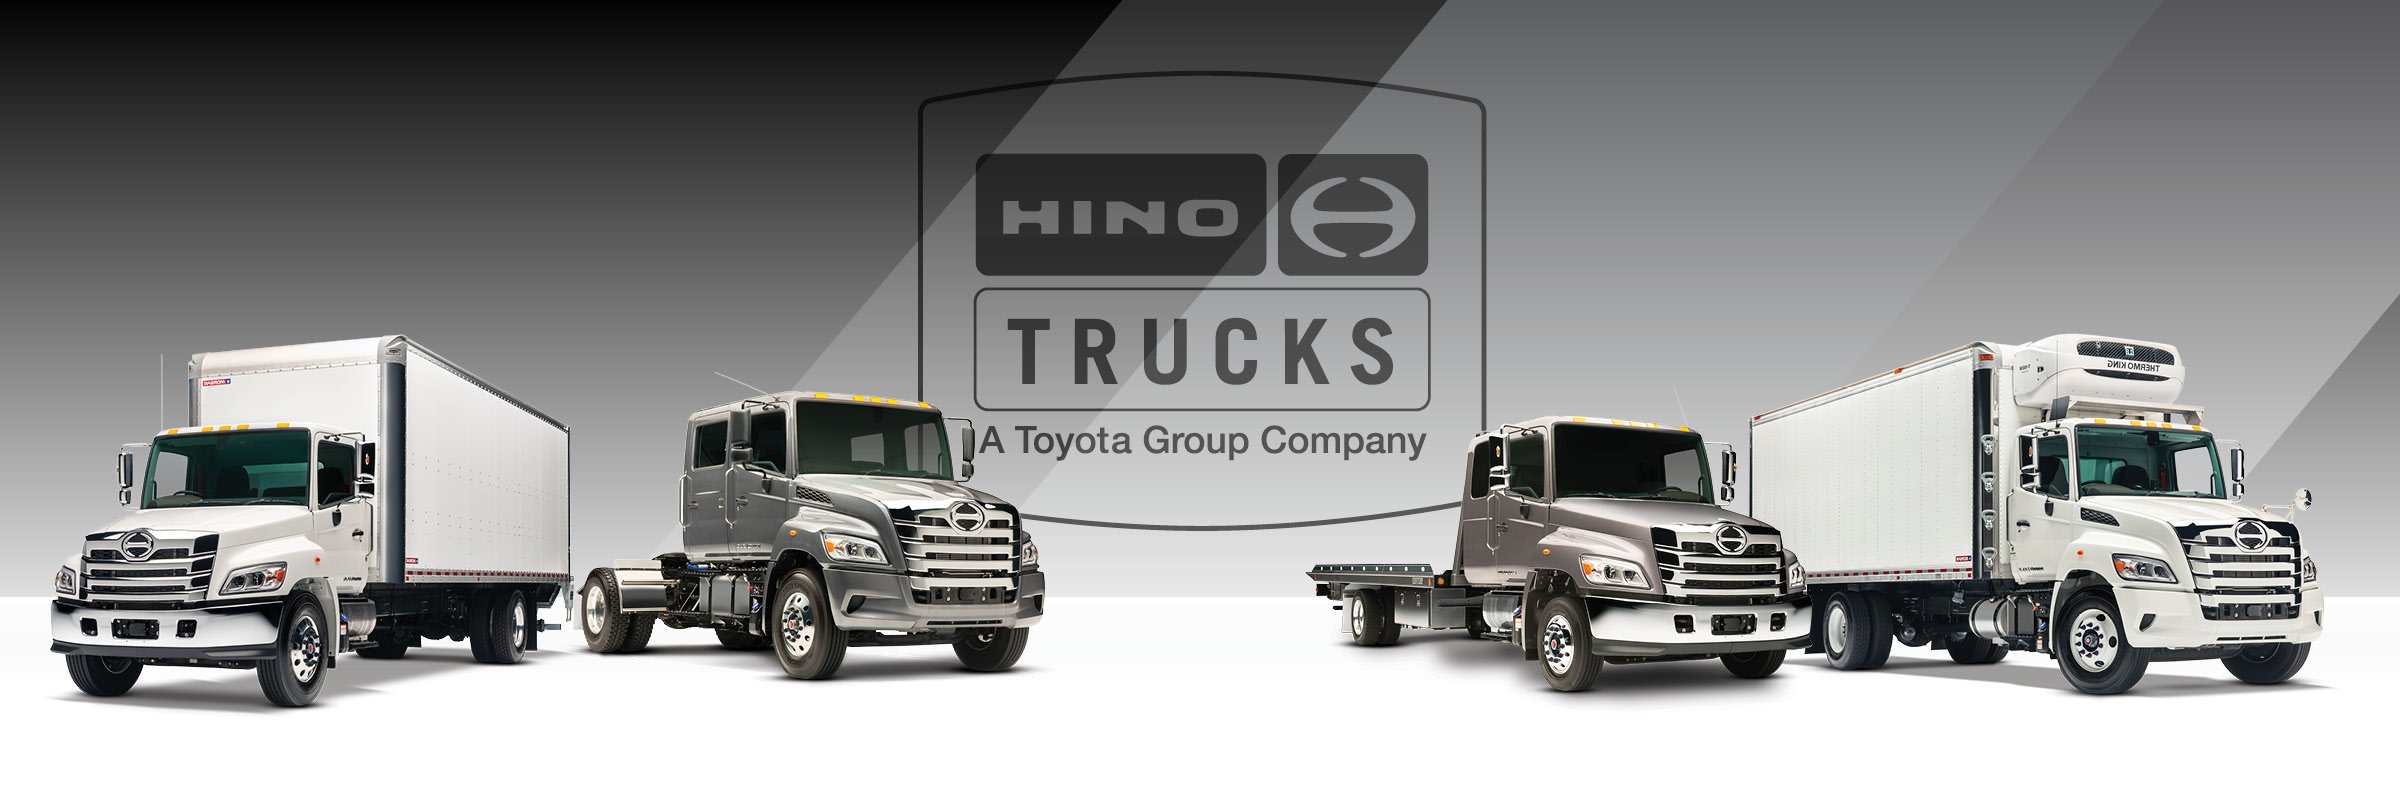 Hino truck lineup | Hino Trucks